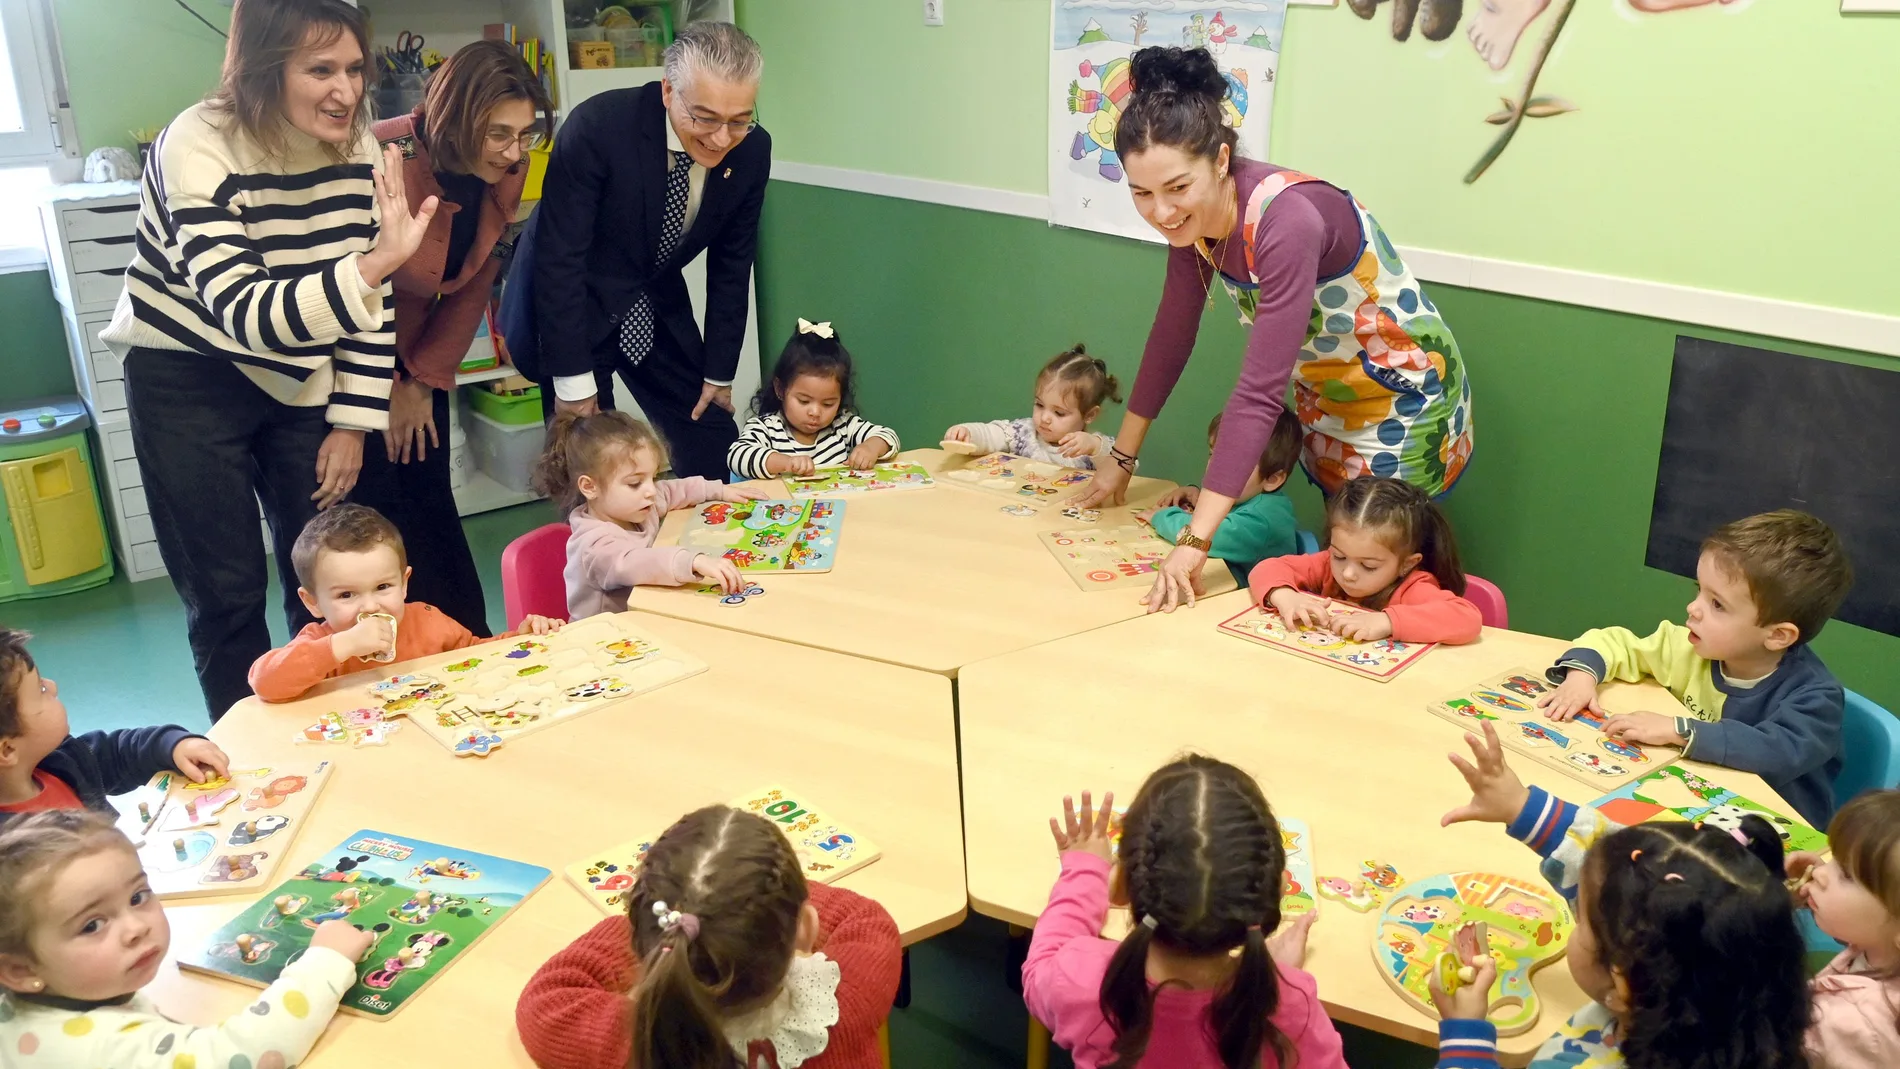  La consejera de Educación, Rocío Lucas, visita un centro de Educación Infantil en Aranda de Duero